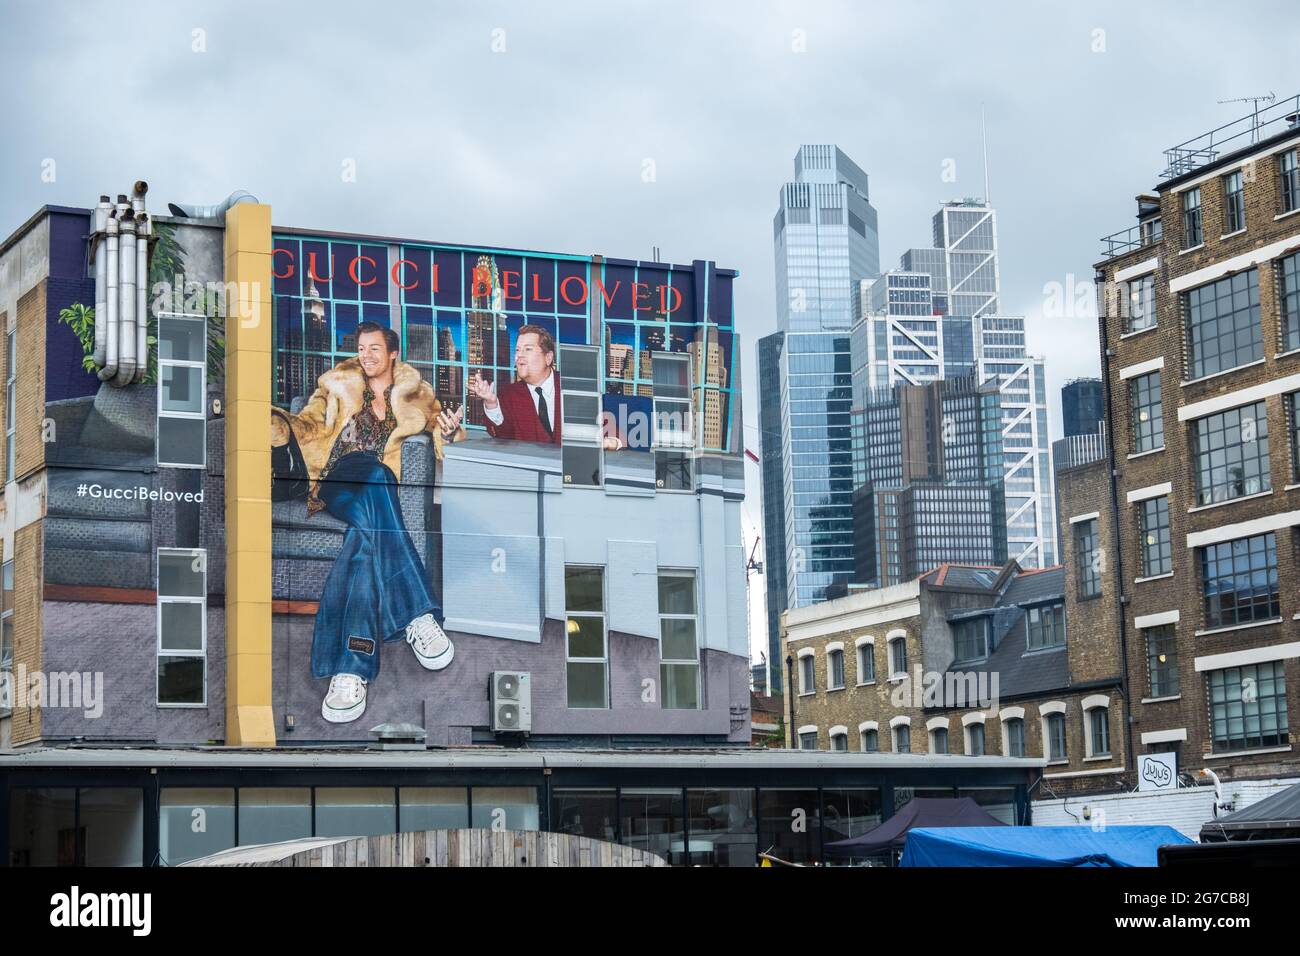 Londres- juillet, 2021: James Corden Gucci publicité murale dans la brasserie Trumans, Shoreditch avec la ville de Londres en arrière-plan Banque D'Images